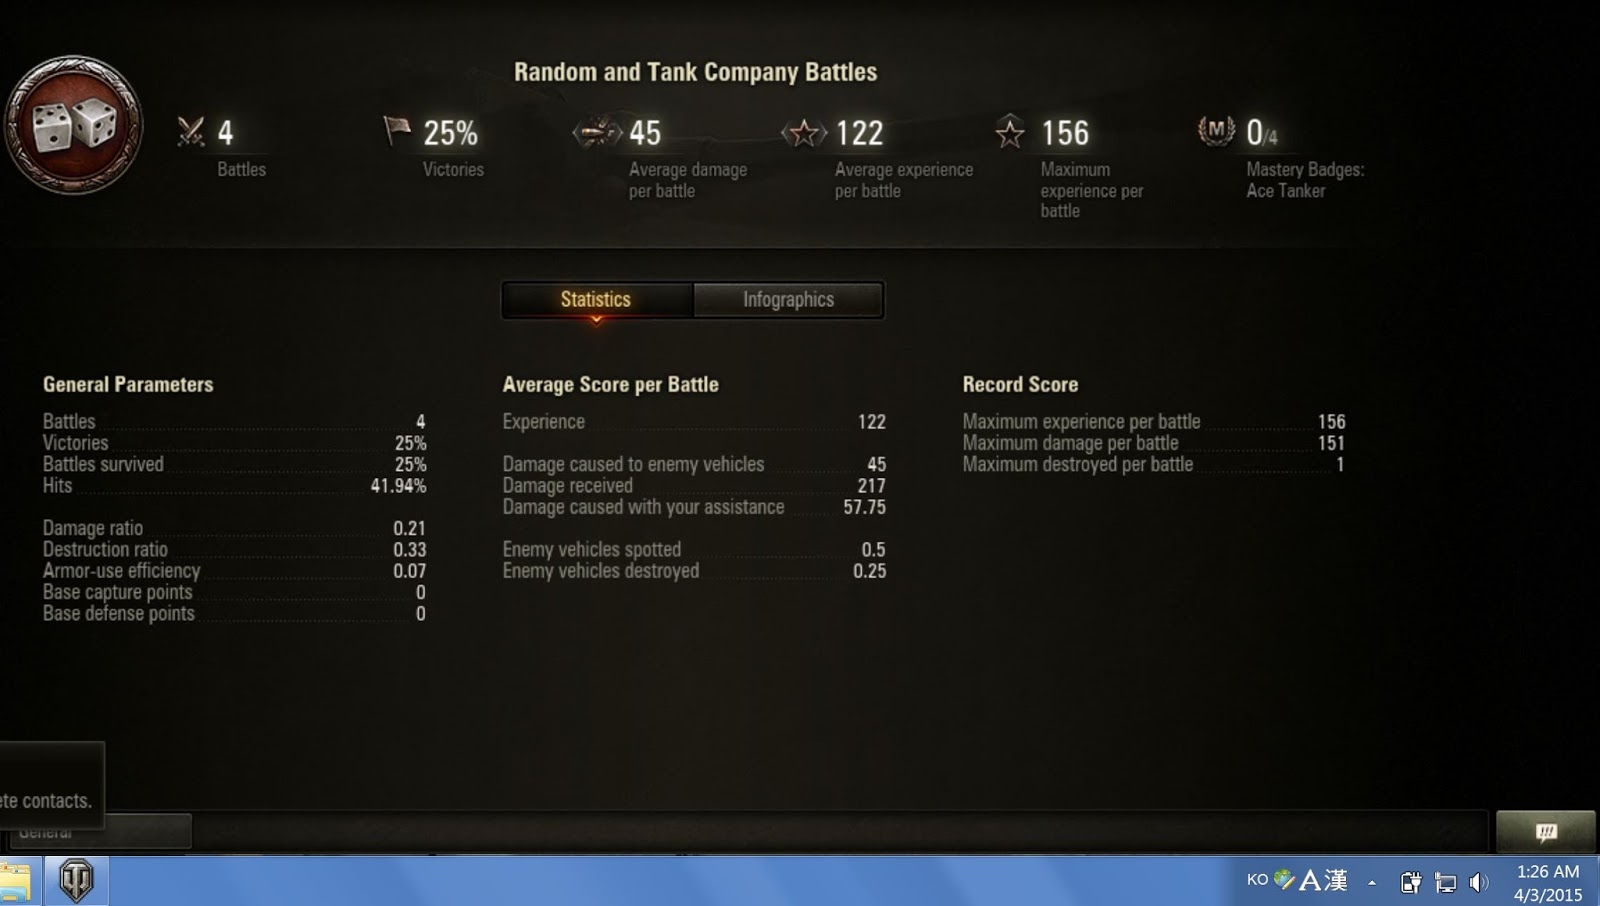 Статистика танков wot